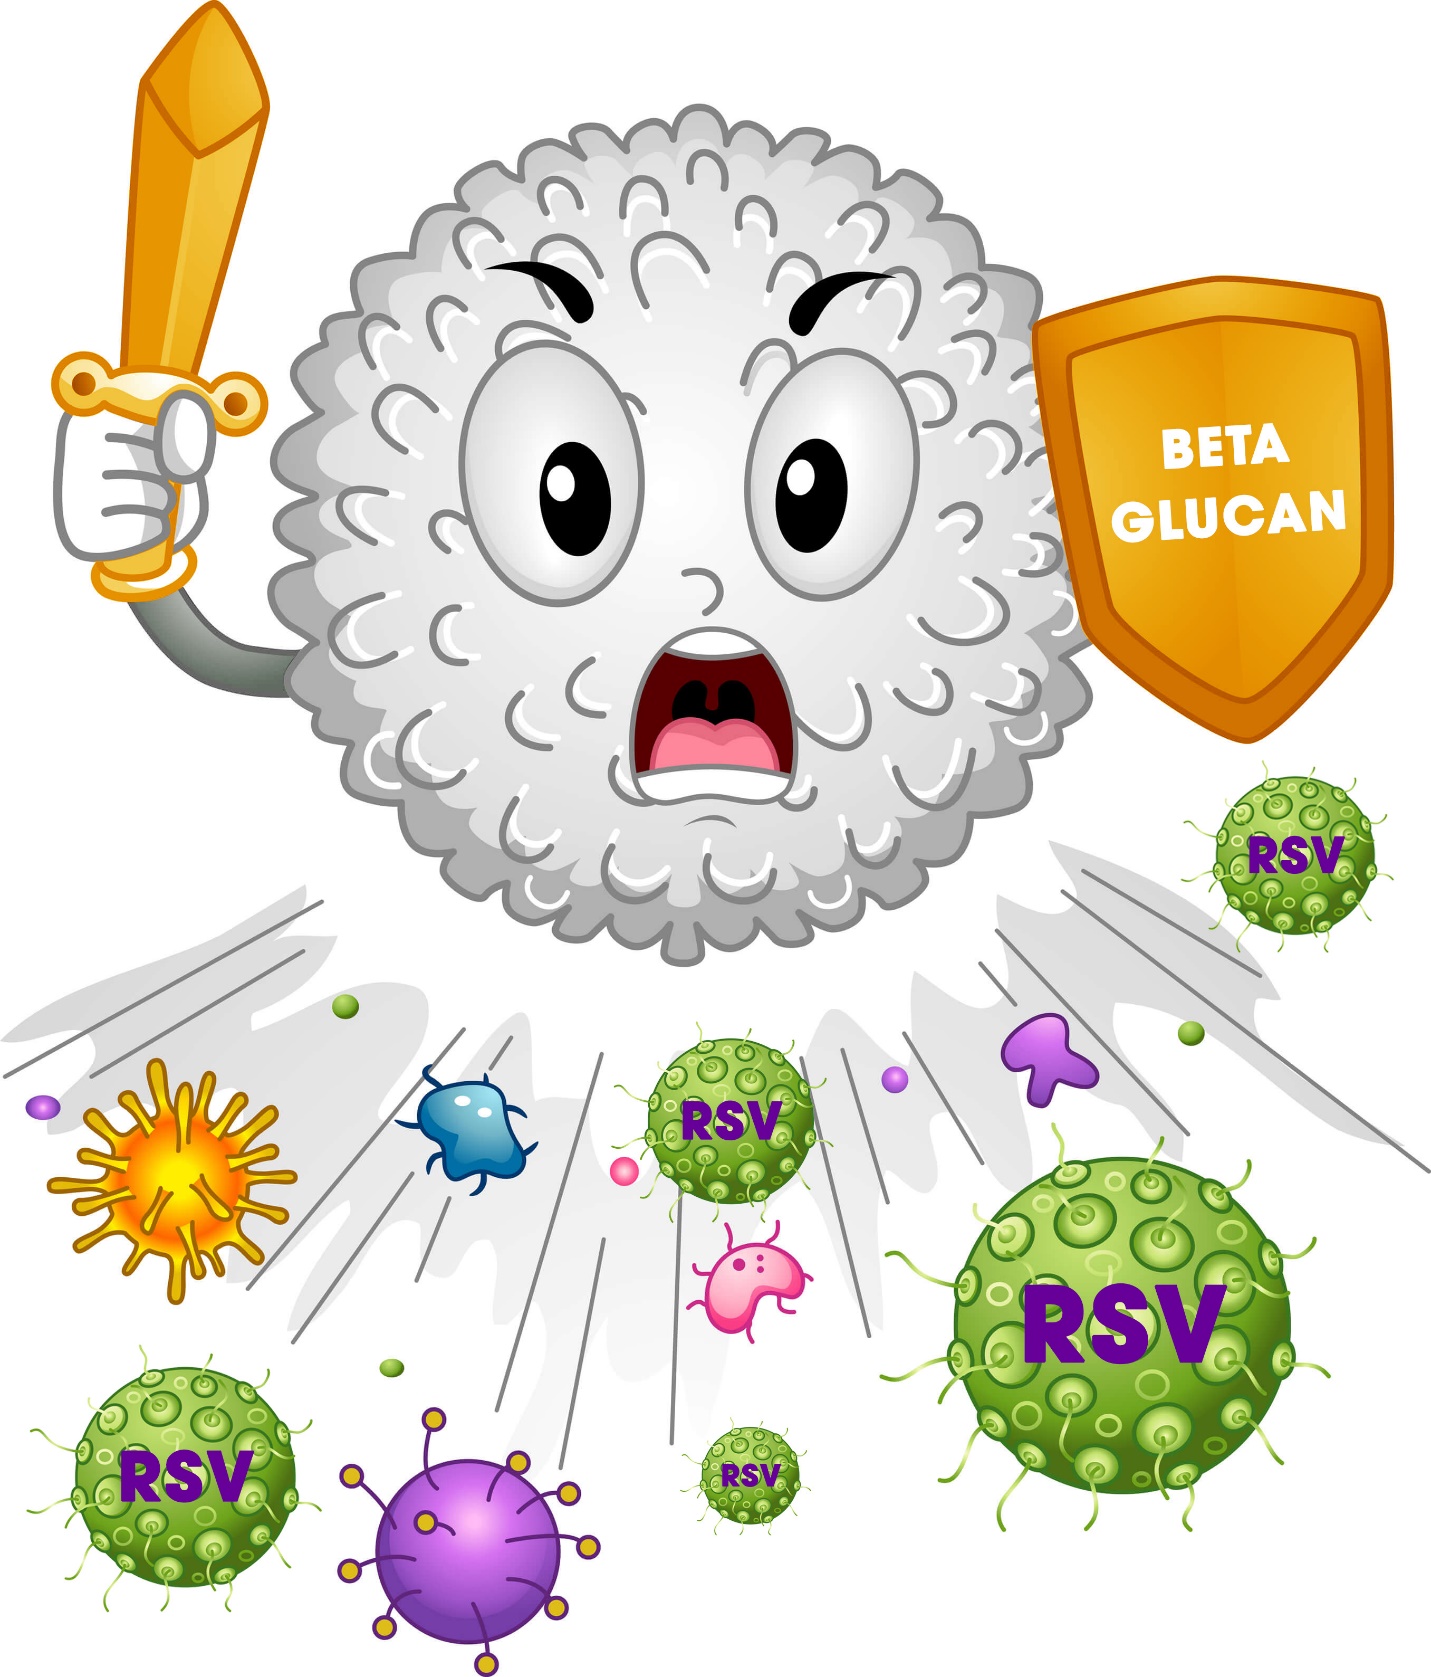 Con bị suy hô hấp, gặp biến chứng nguy hiểm, phải nằm viện, thở máy do 4 lầm tưởng của cha mẹ về virus RSV - 3